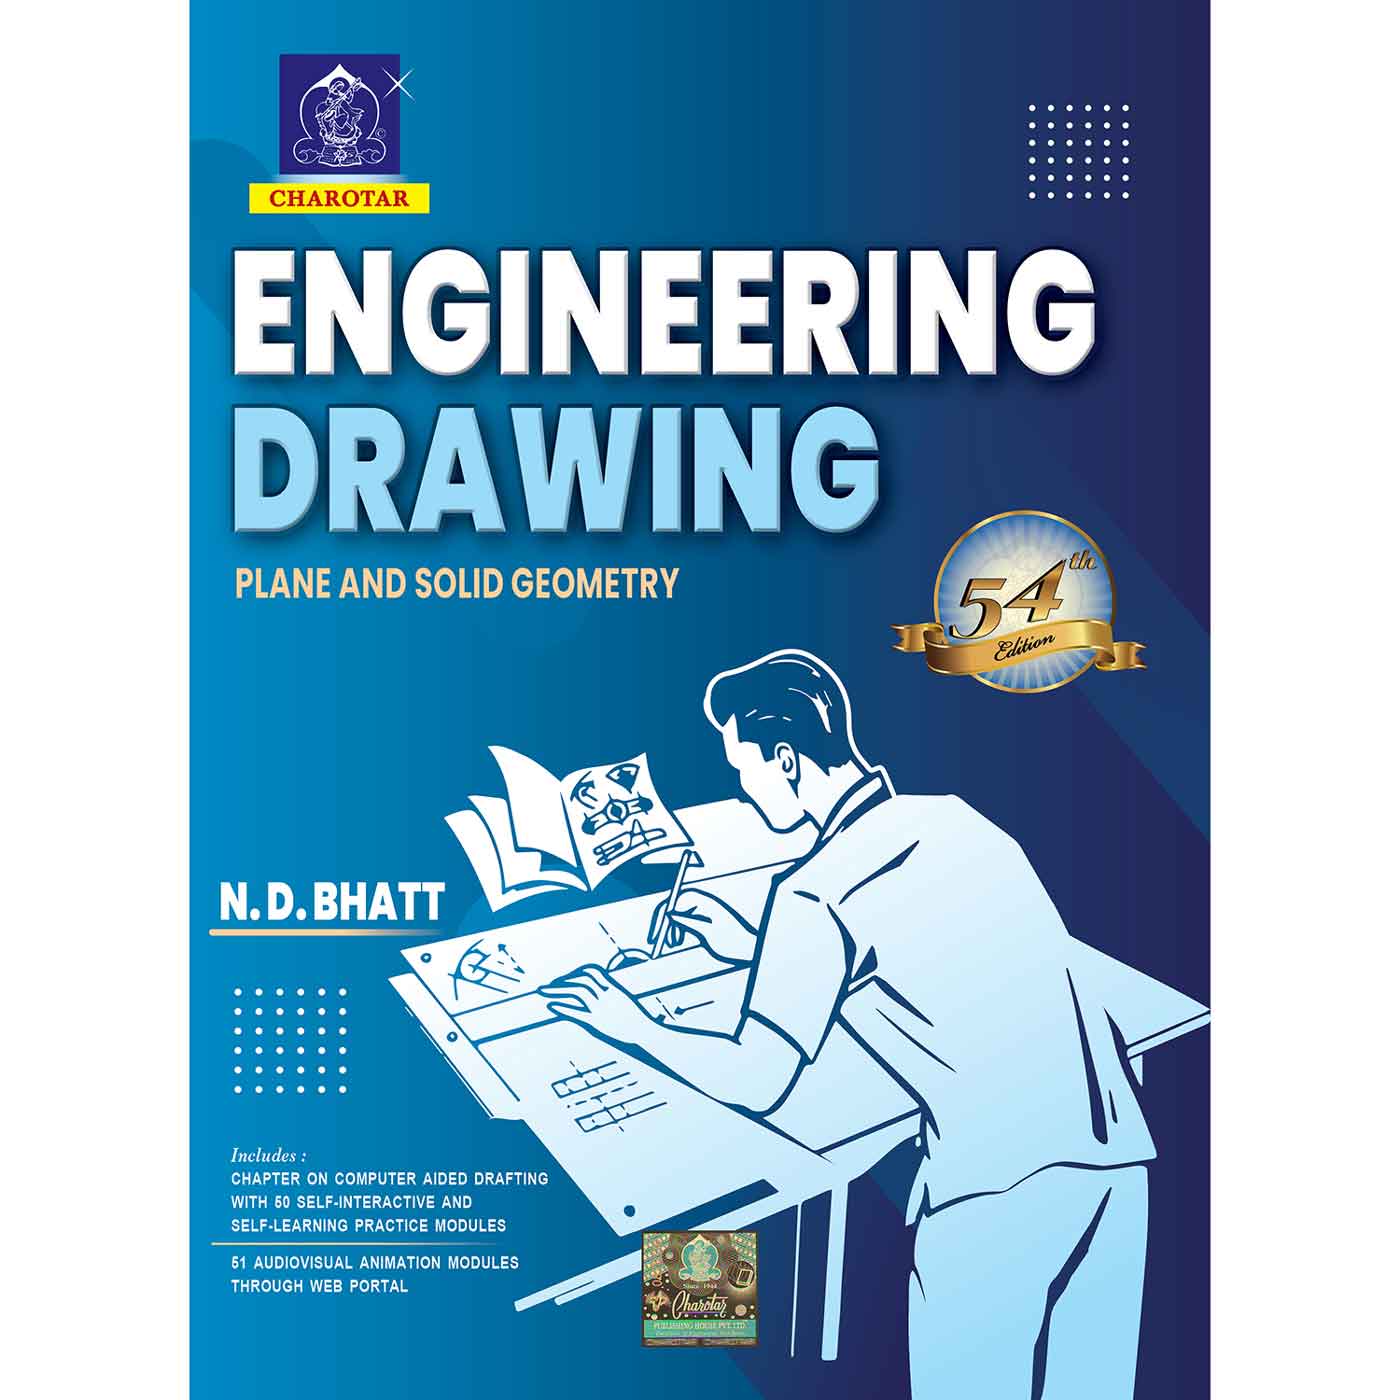 ASME Y14.100-2004 - Engineering Drawing Practices